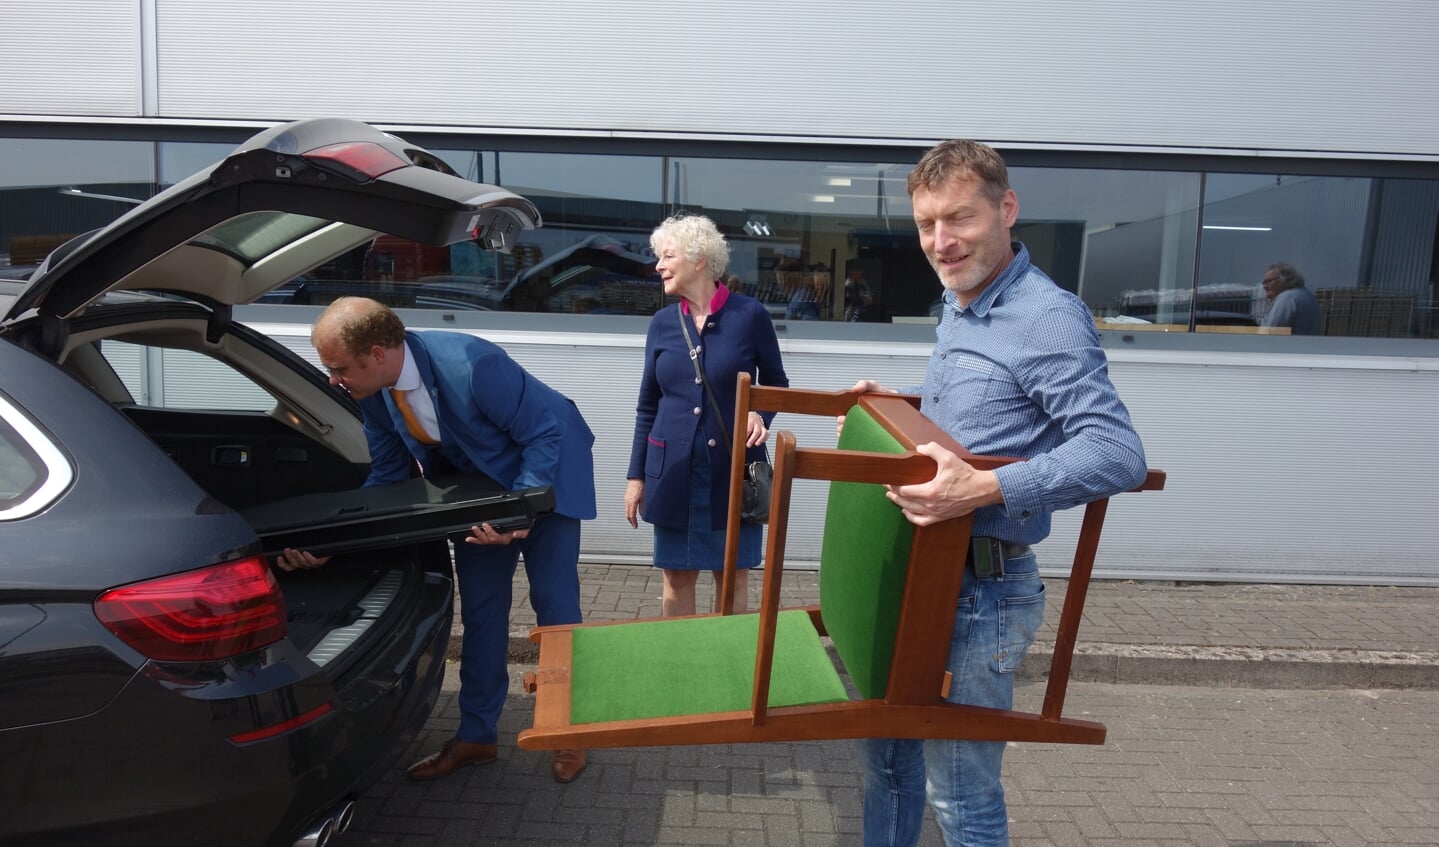 De stoel werd in de auto geladen. Foto: Clemens Bielen